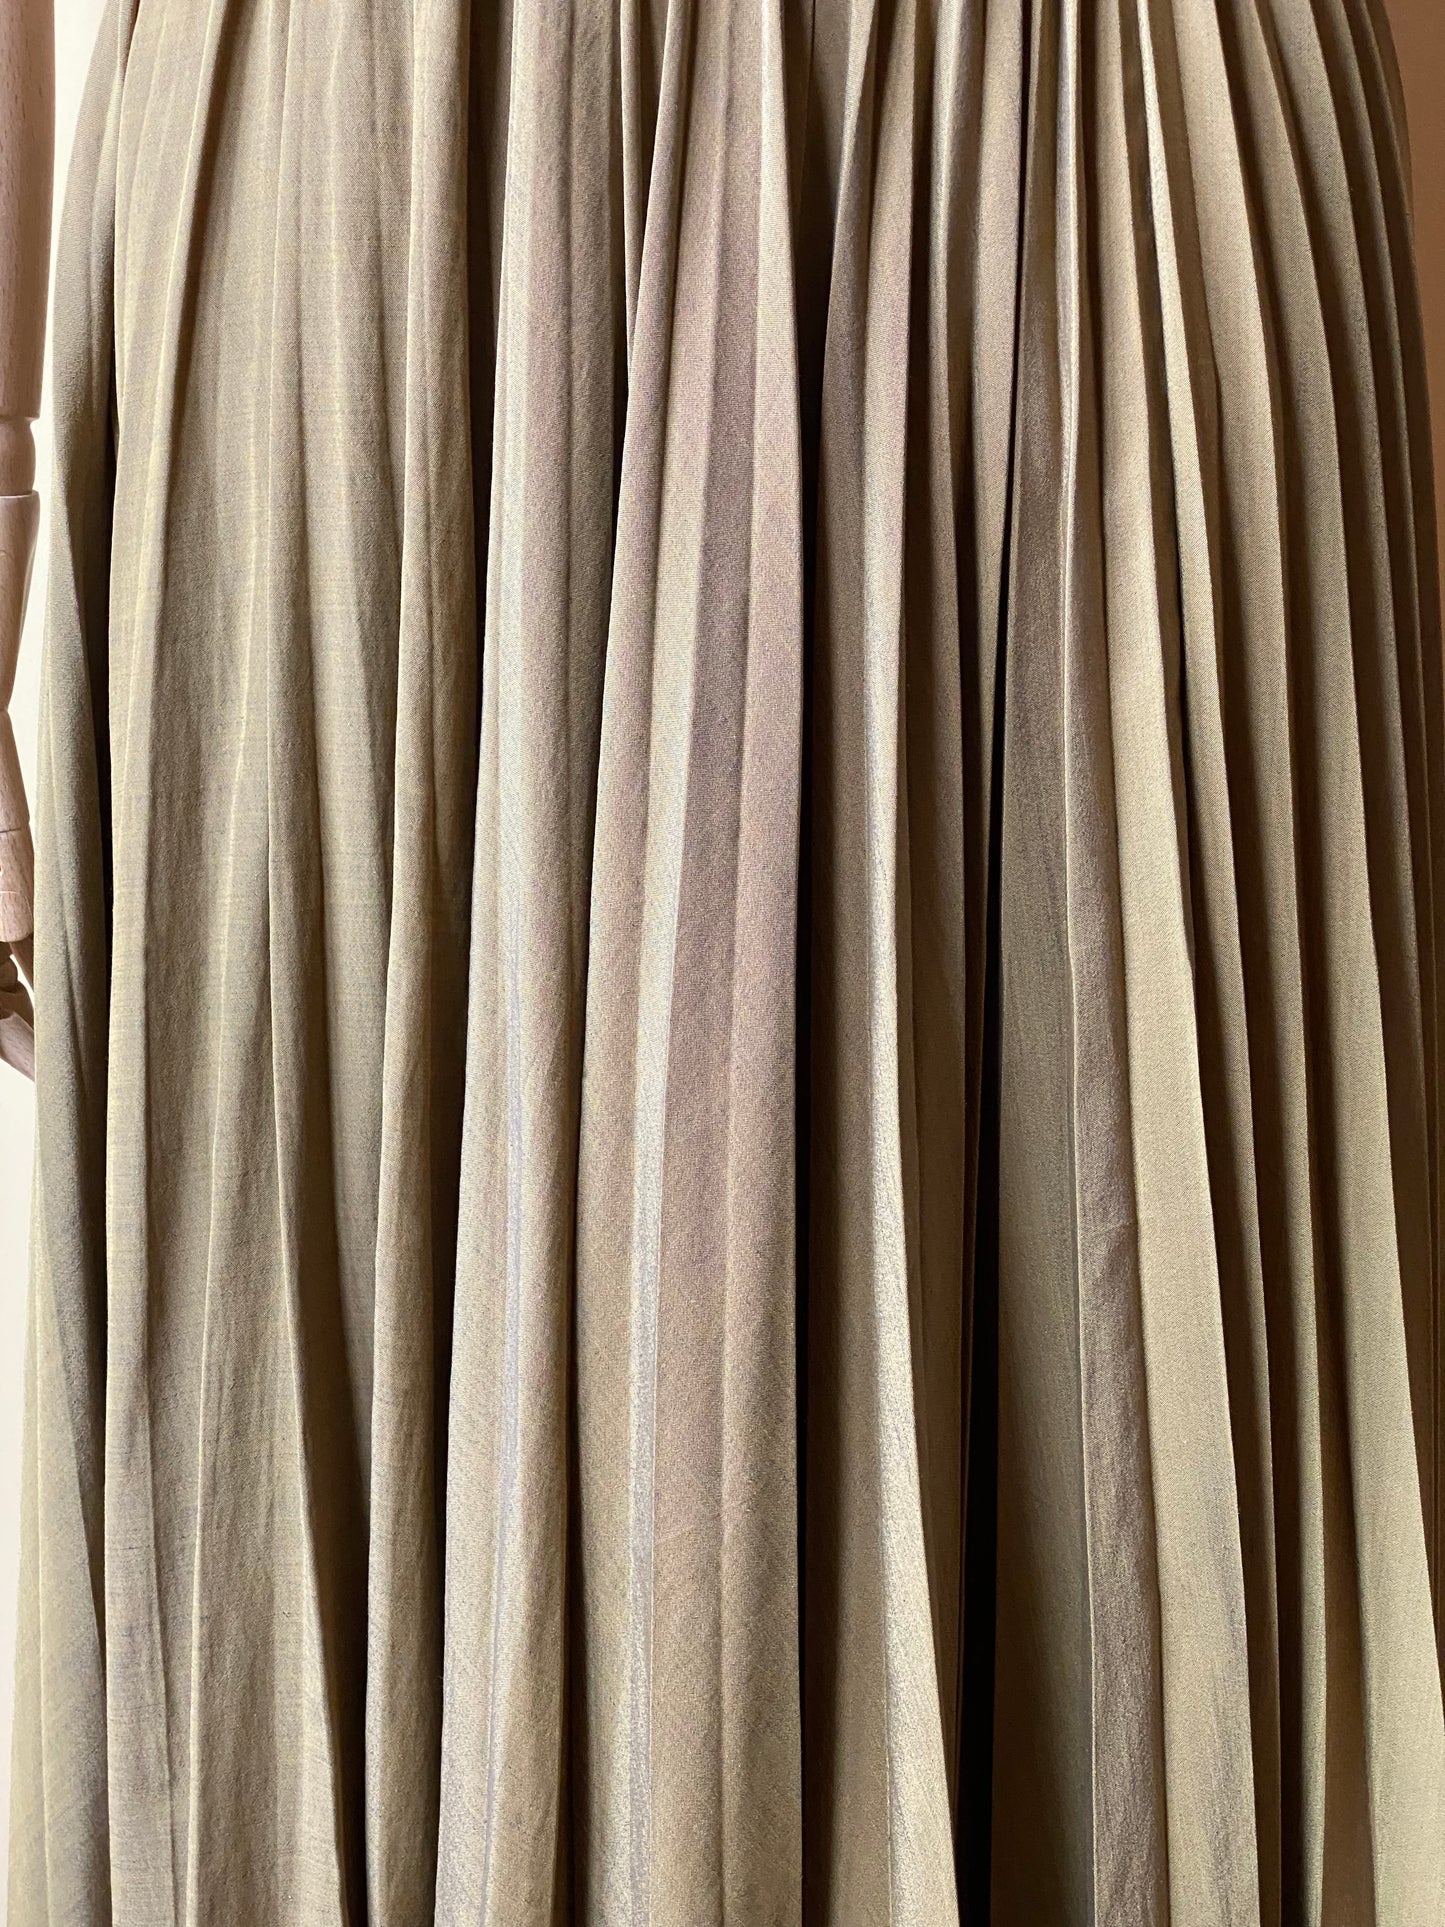 Vintage Pleated Khaki Skirt